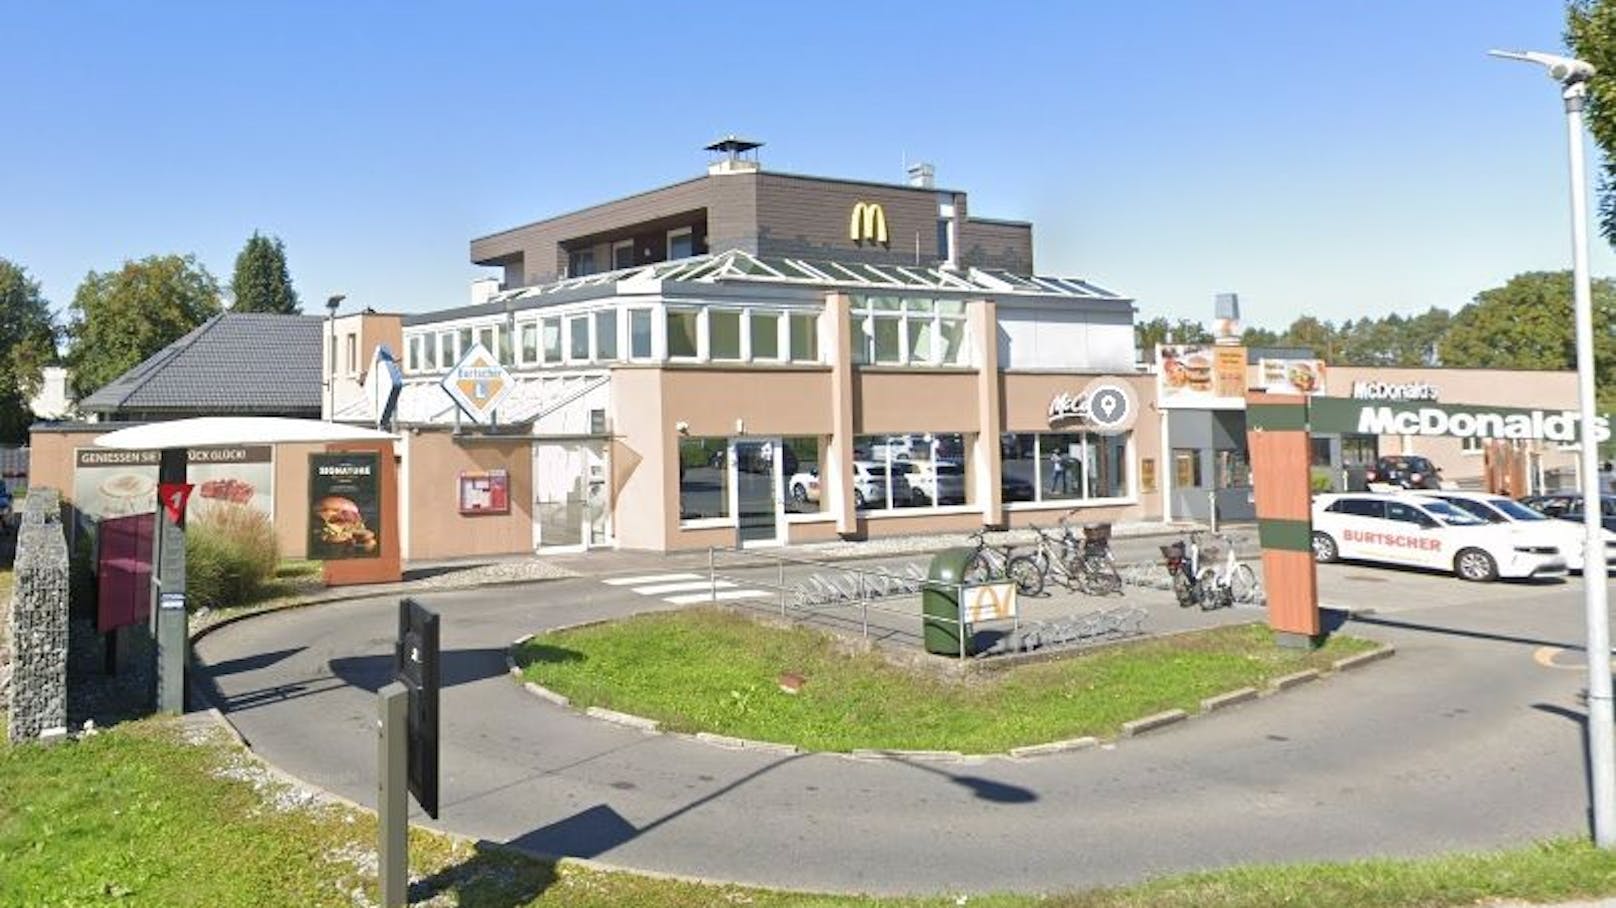 Prügelei in Fast-Food-Lokal – Polizei sucht nach Zeugen